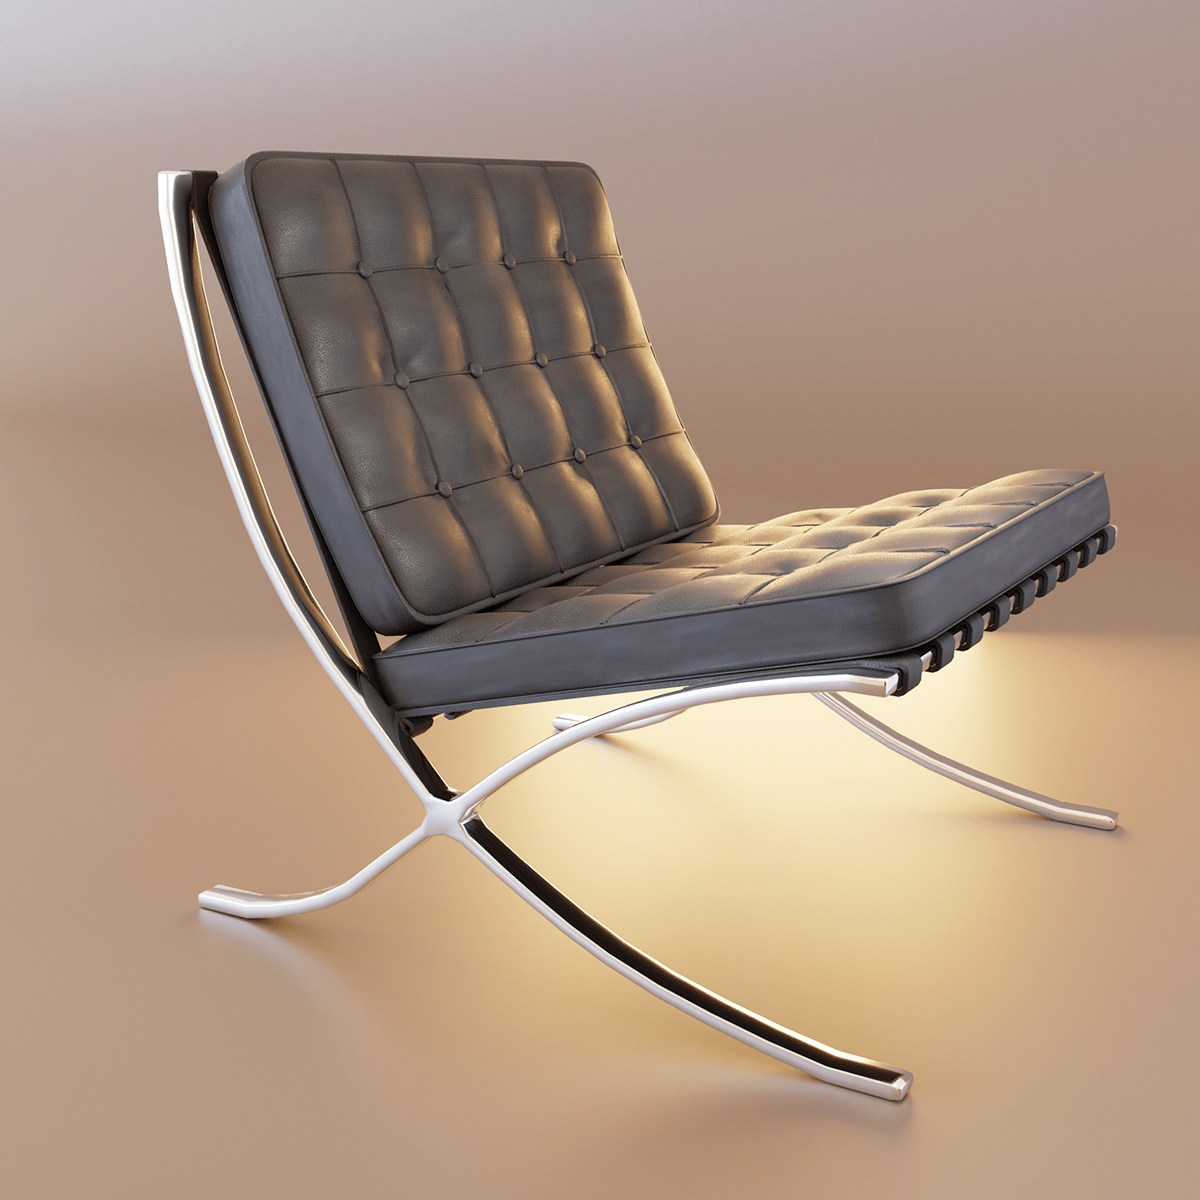 3dvisualization archviz barcelonachair CGart furniture interiordesign MR90 Render